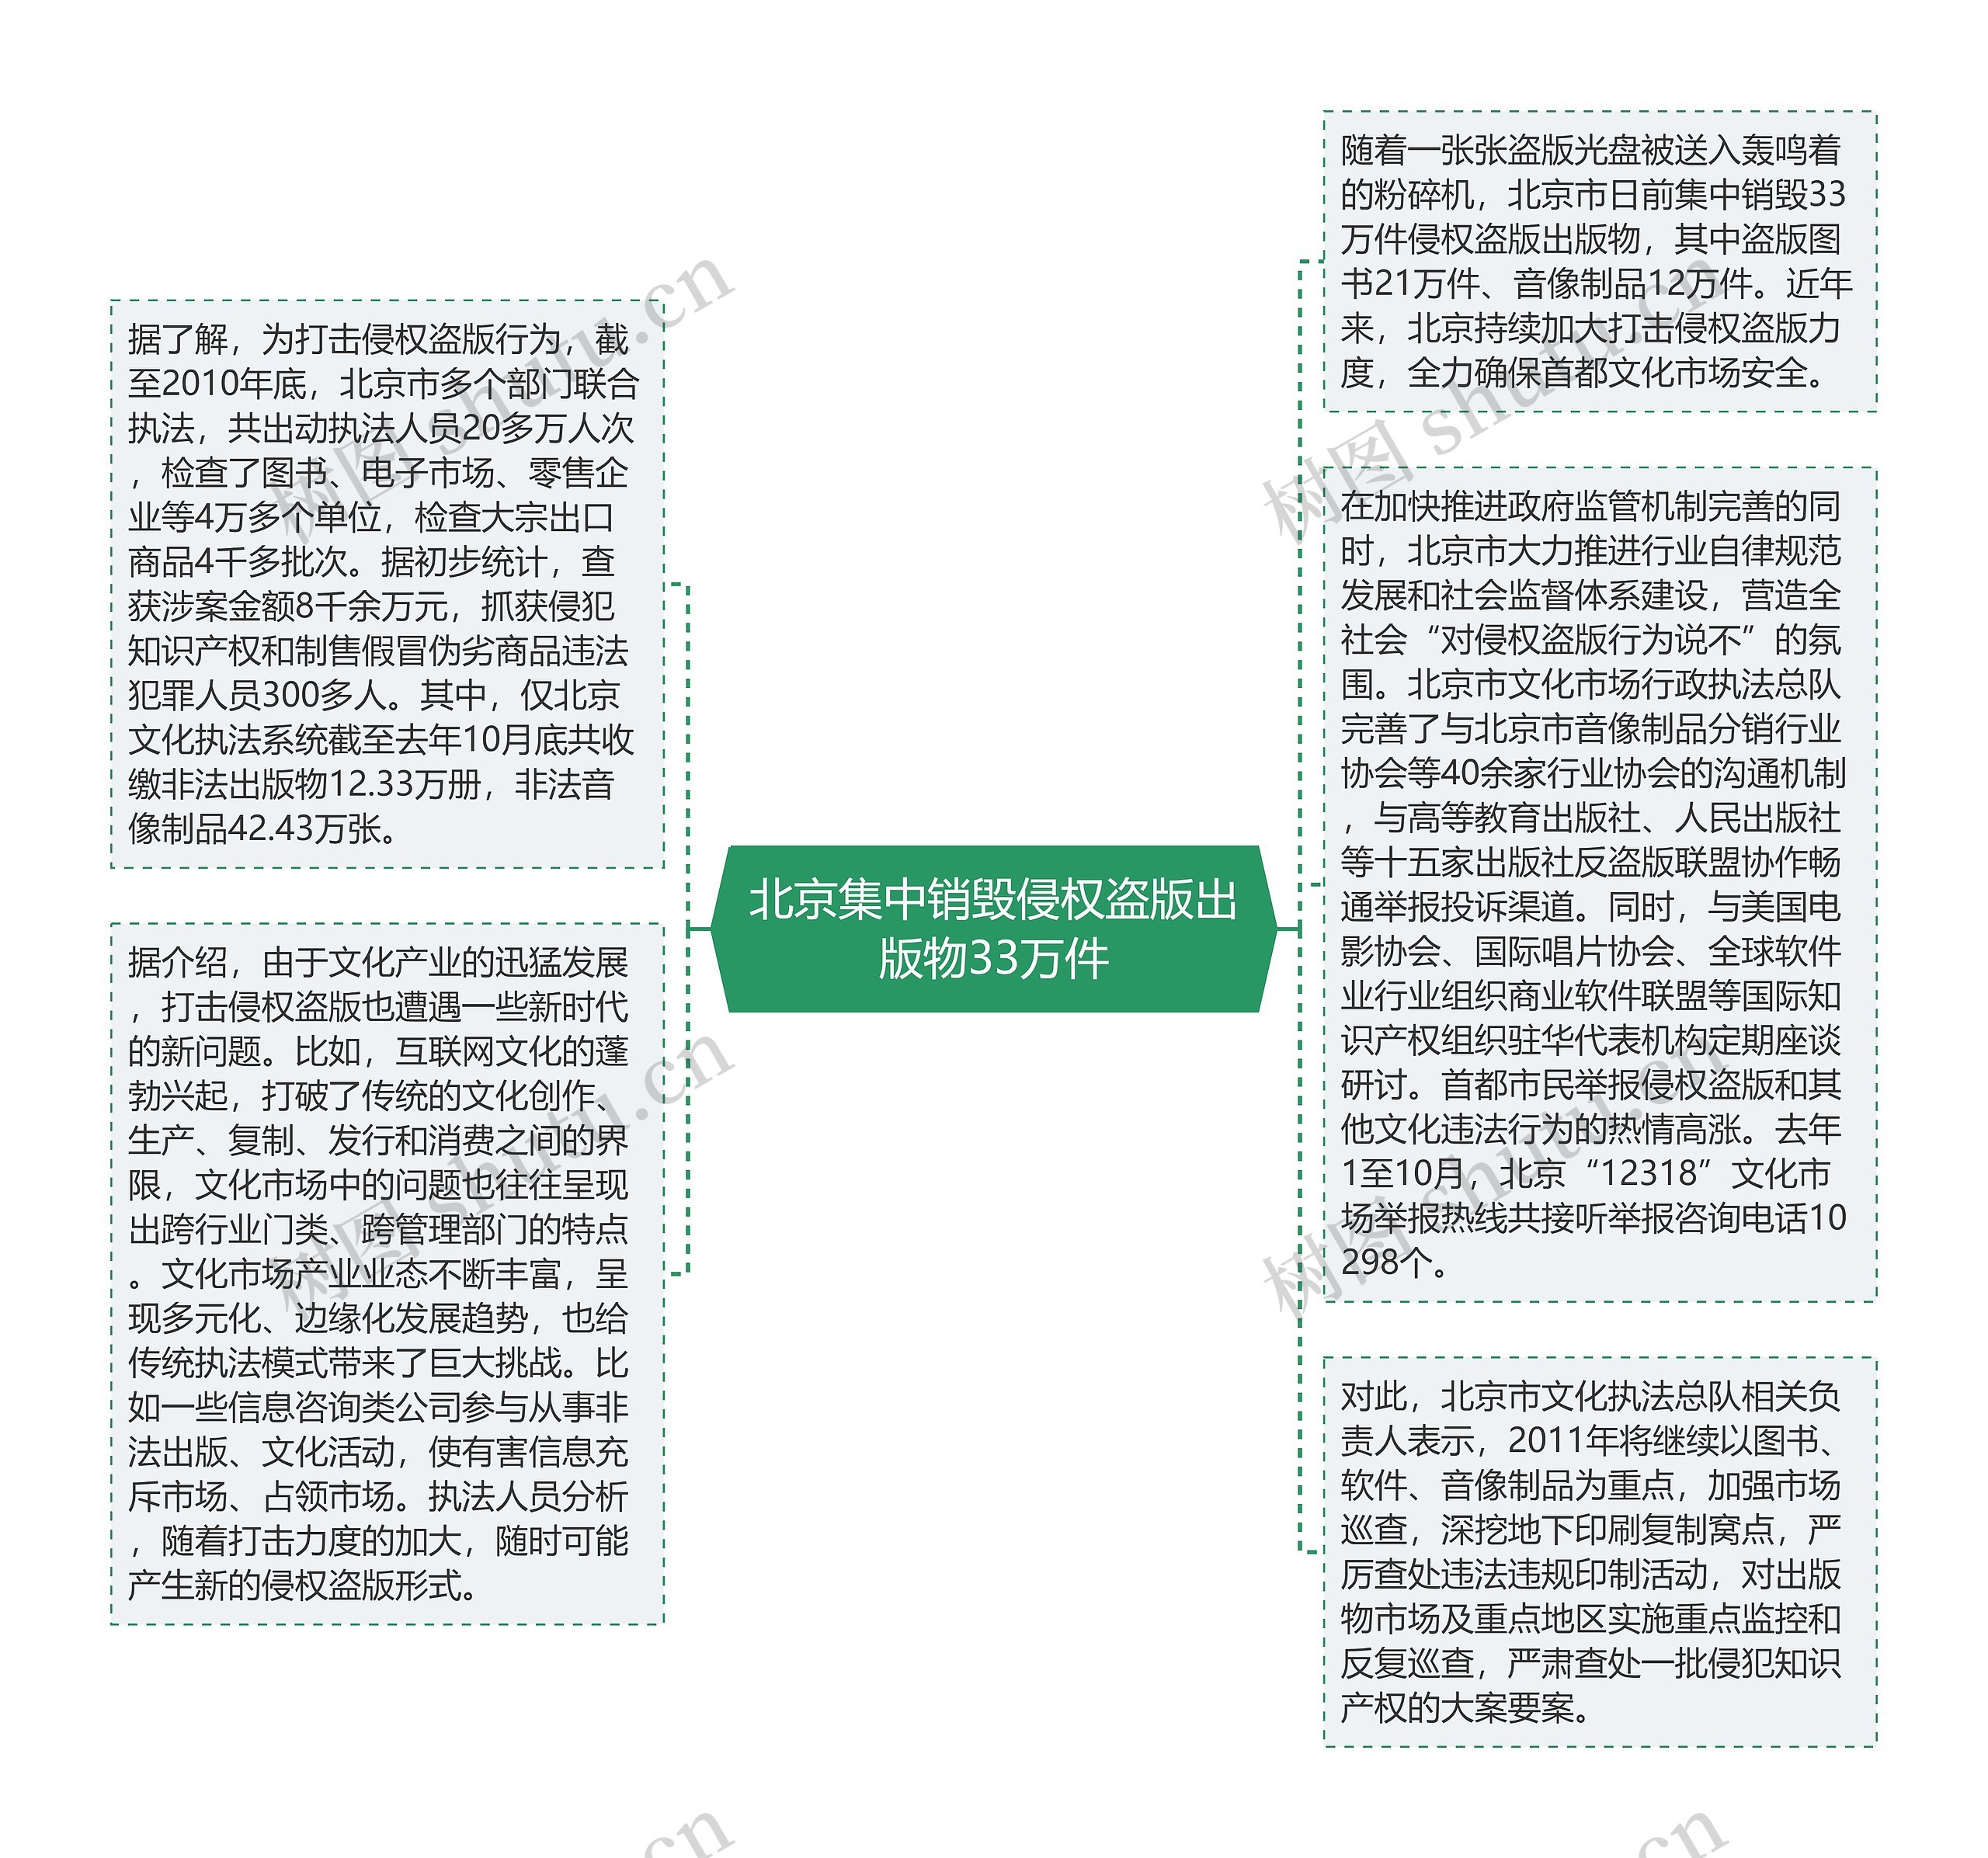 北京集中销毁侵权盗版出版物33万件